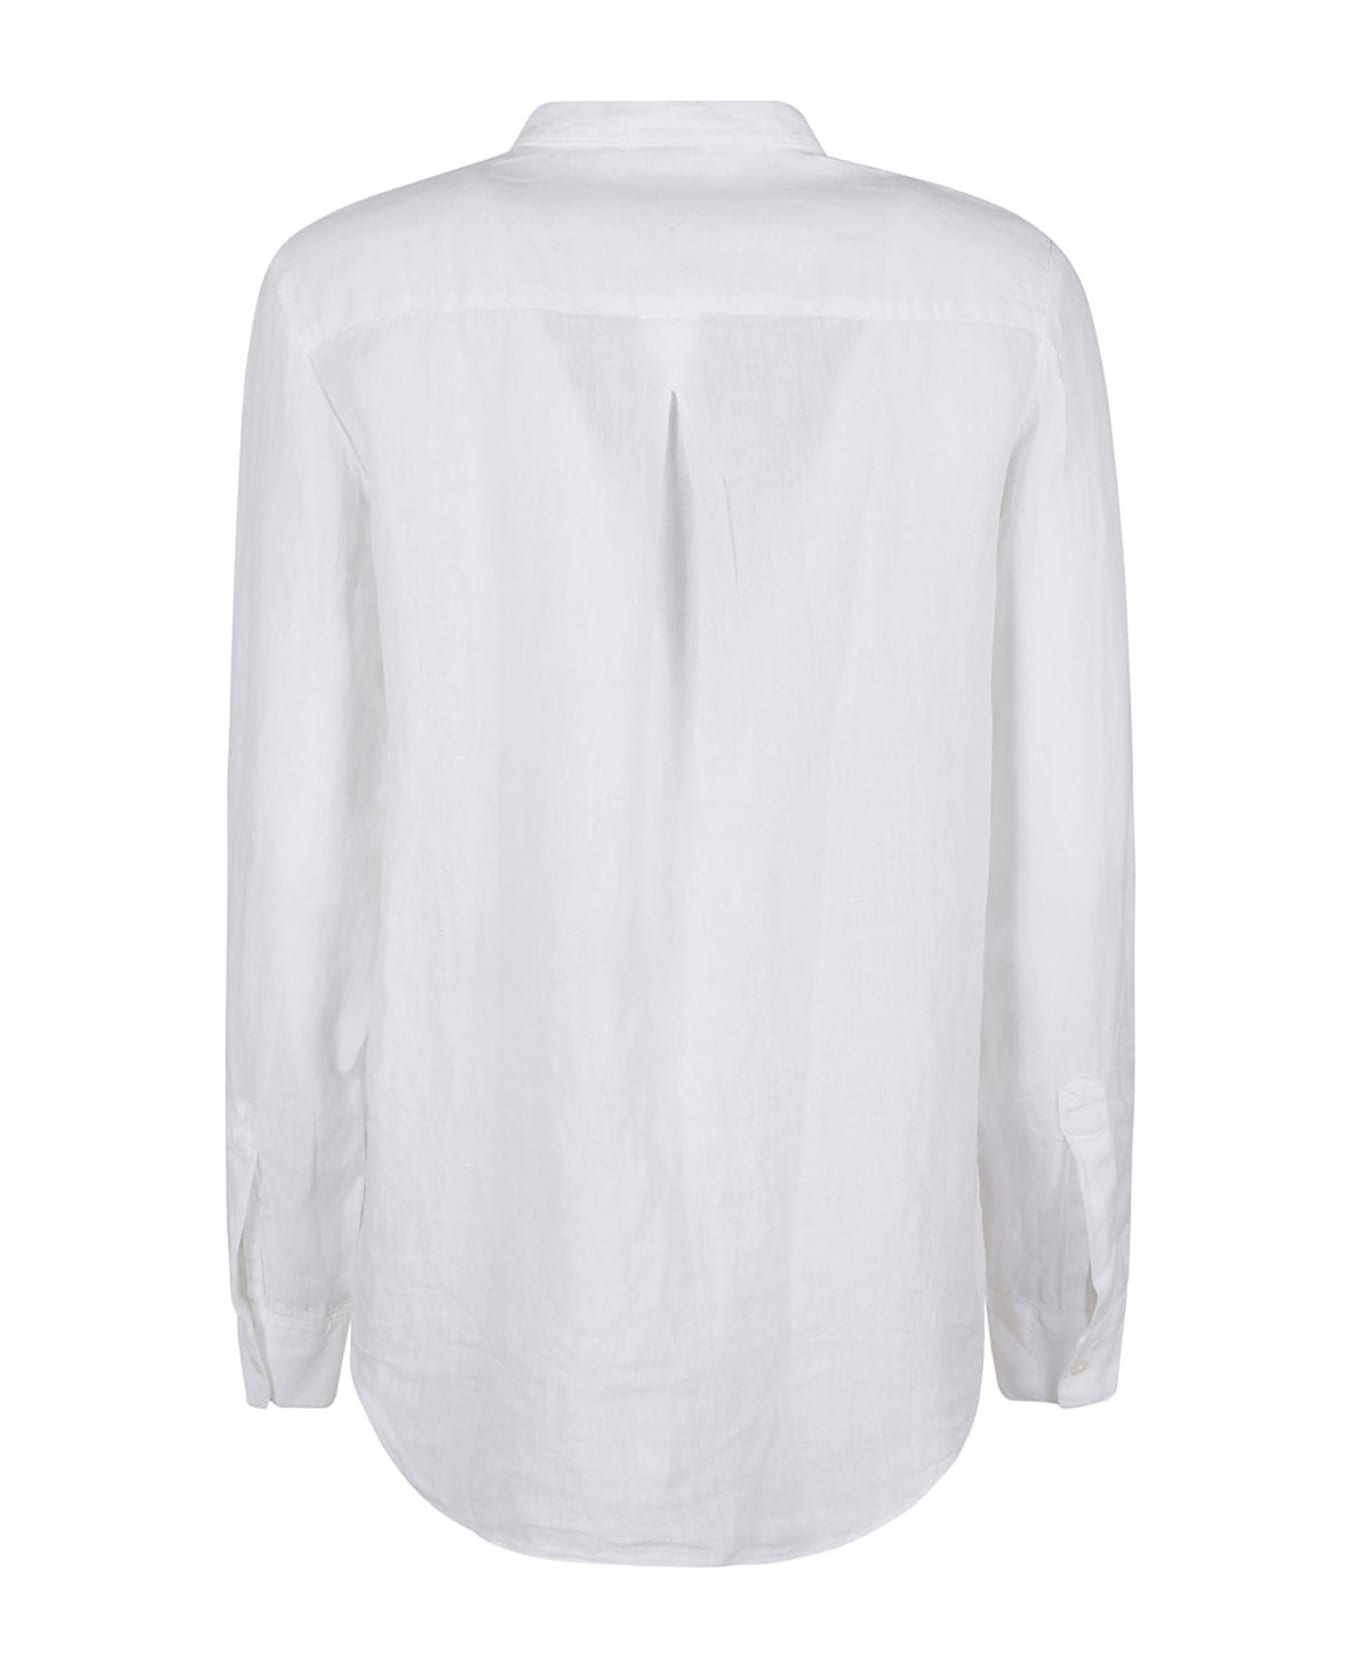 Fay Shirts White - White シャツ